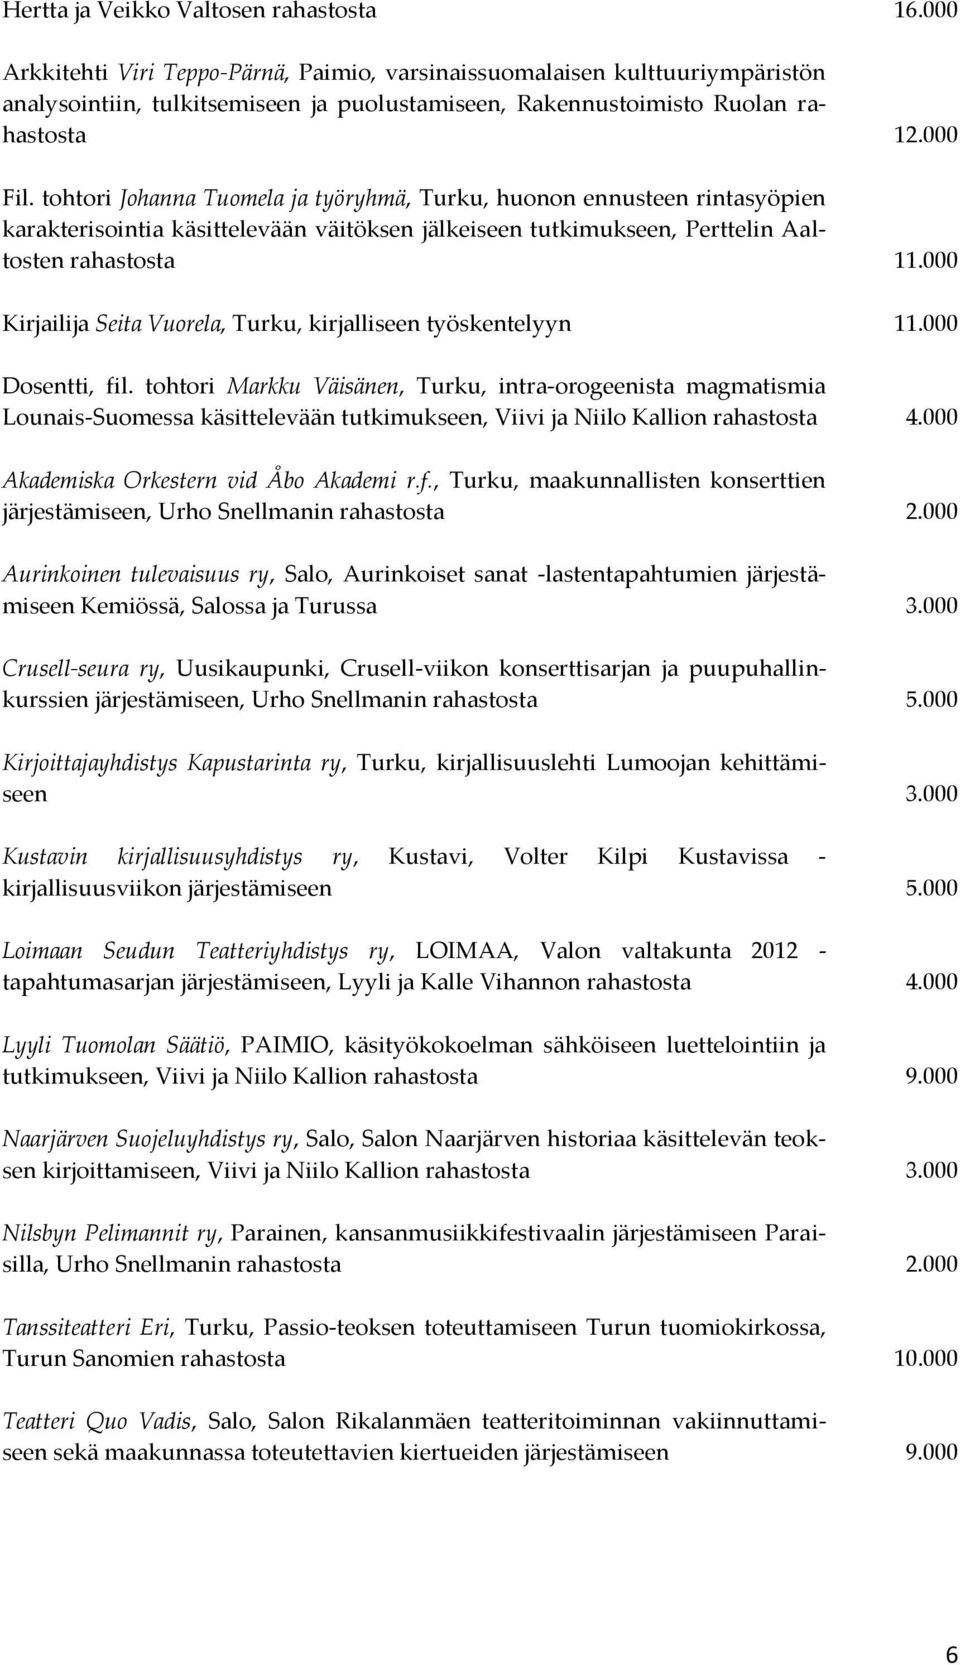 tohtori Johanna Tuomela ja työryhmä, Turku, huonon ennusteen rintasyöpien karakterisointia käsittelevään väitöksen jälkeiseen tutkimukseen, Perttelin Aaltosten rahastosta 11.